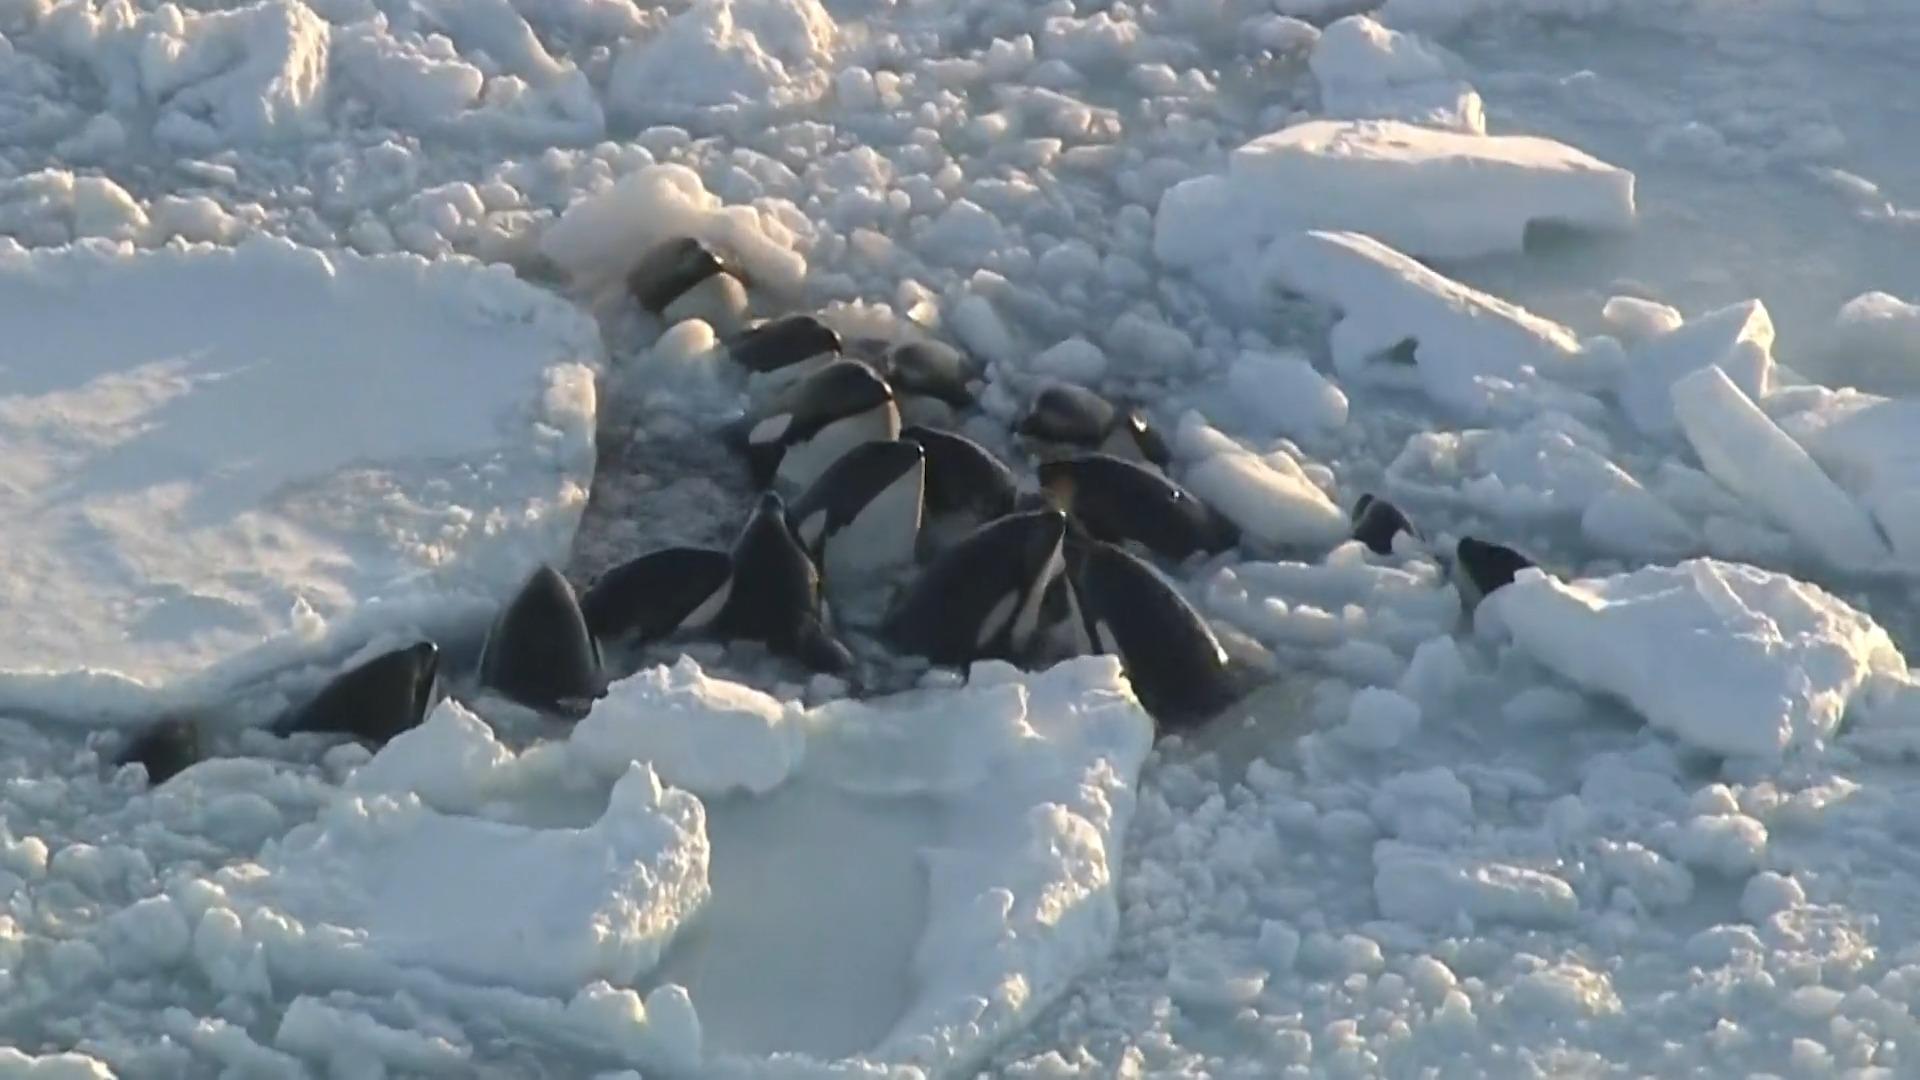 Gruppe Orca-Wale vor Japan im Eis gefangen Ausgang ungewiss